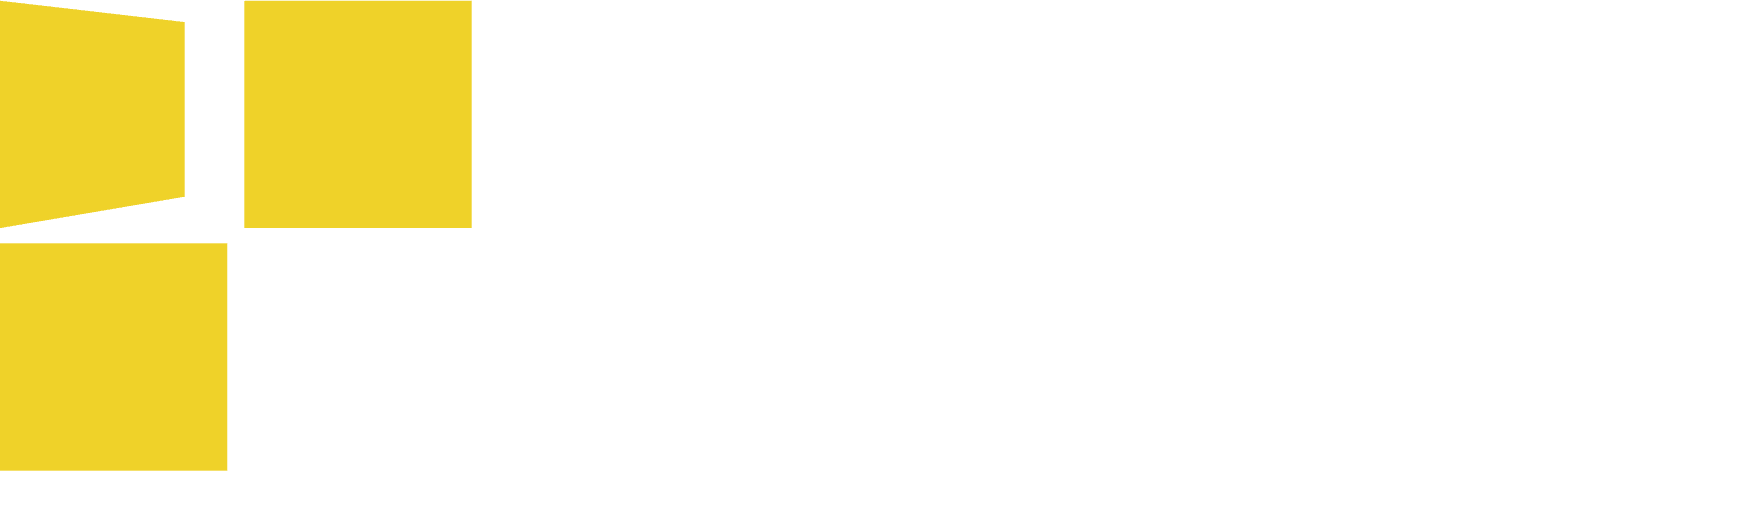 Solstice 50 logo by Kepler